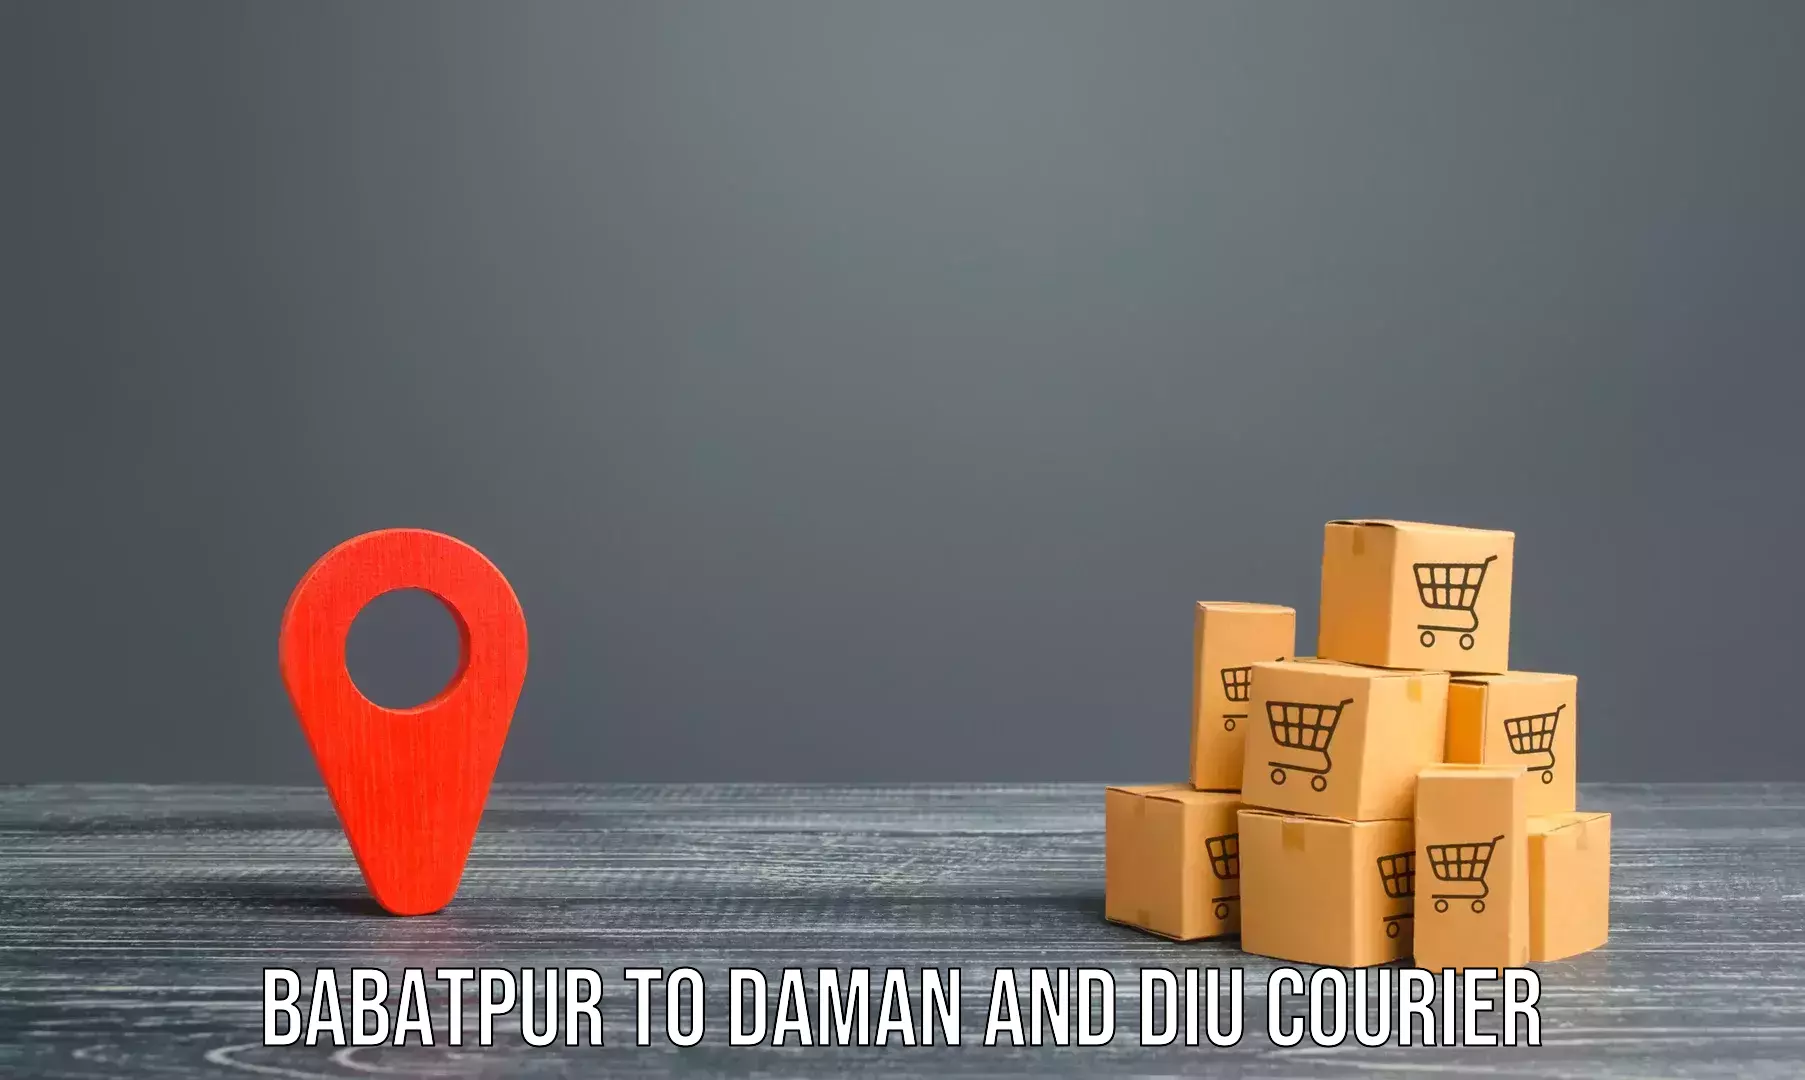 Home shifting experts Babatpur to Daman and Diu